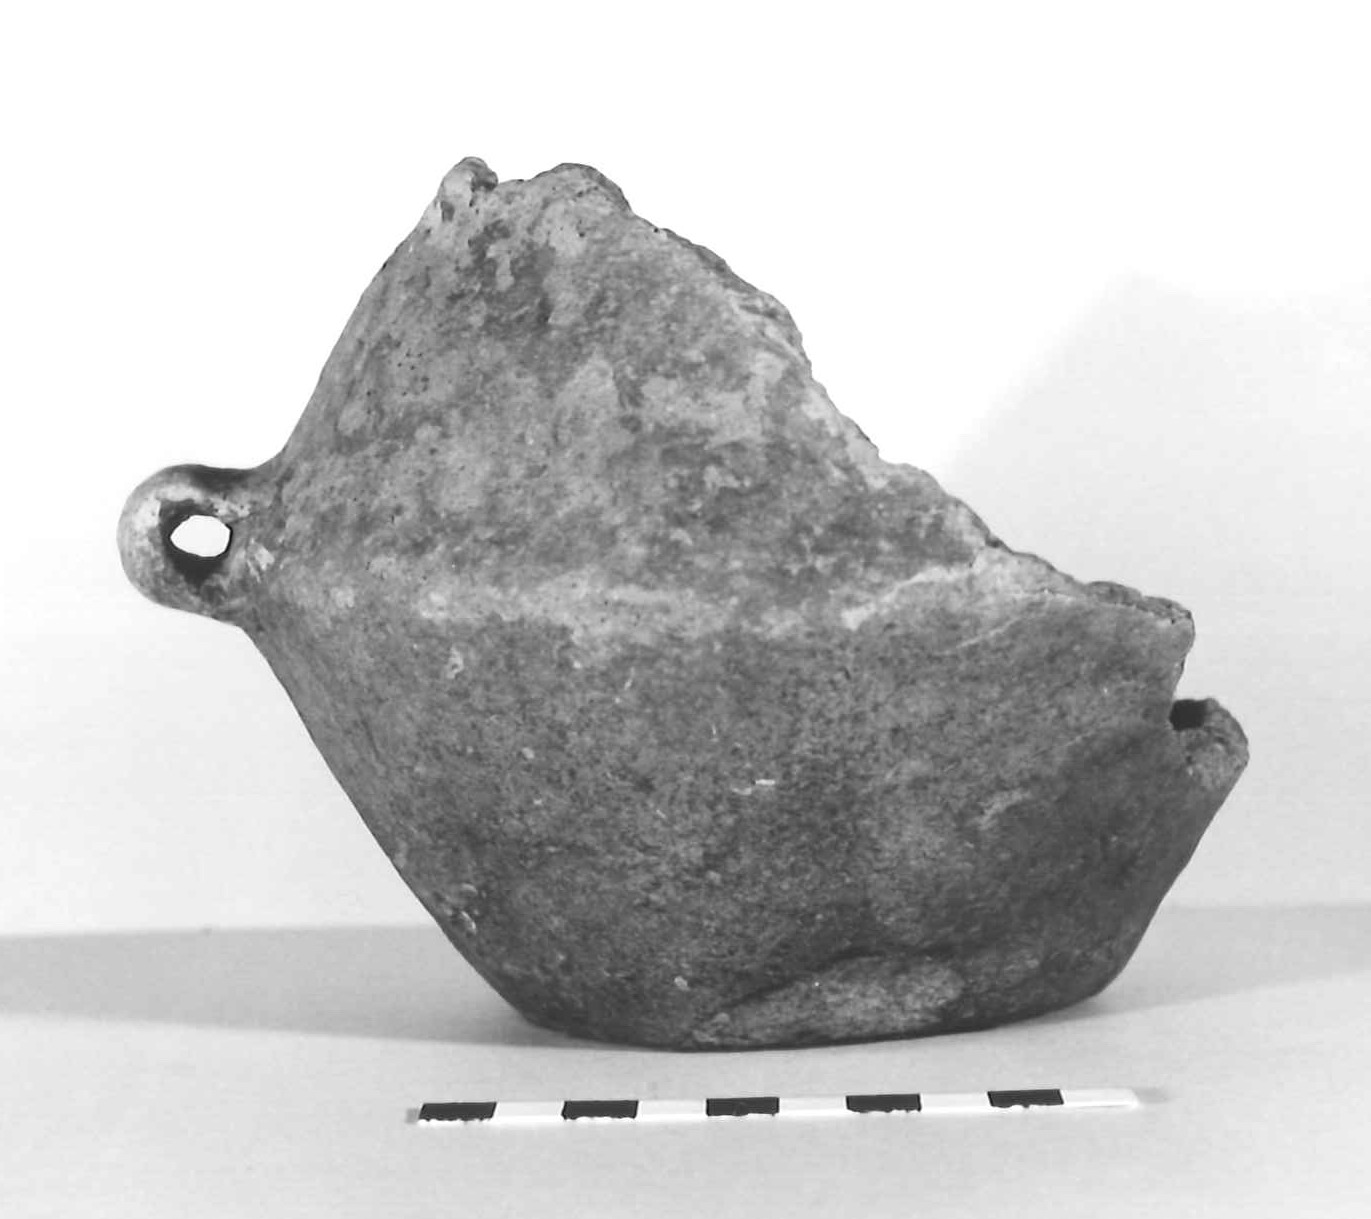 vaso biconico - subappenninico (età del bronzo recente(?))